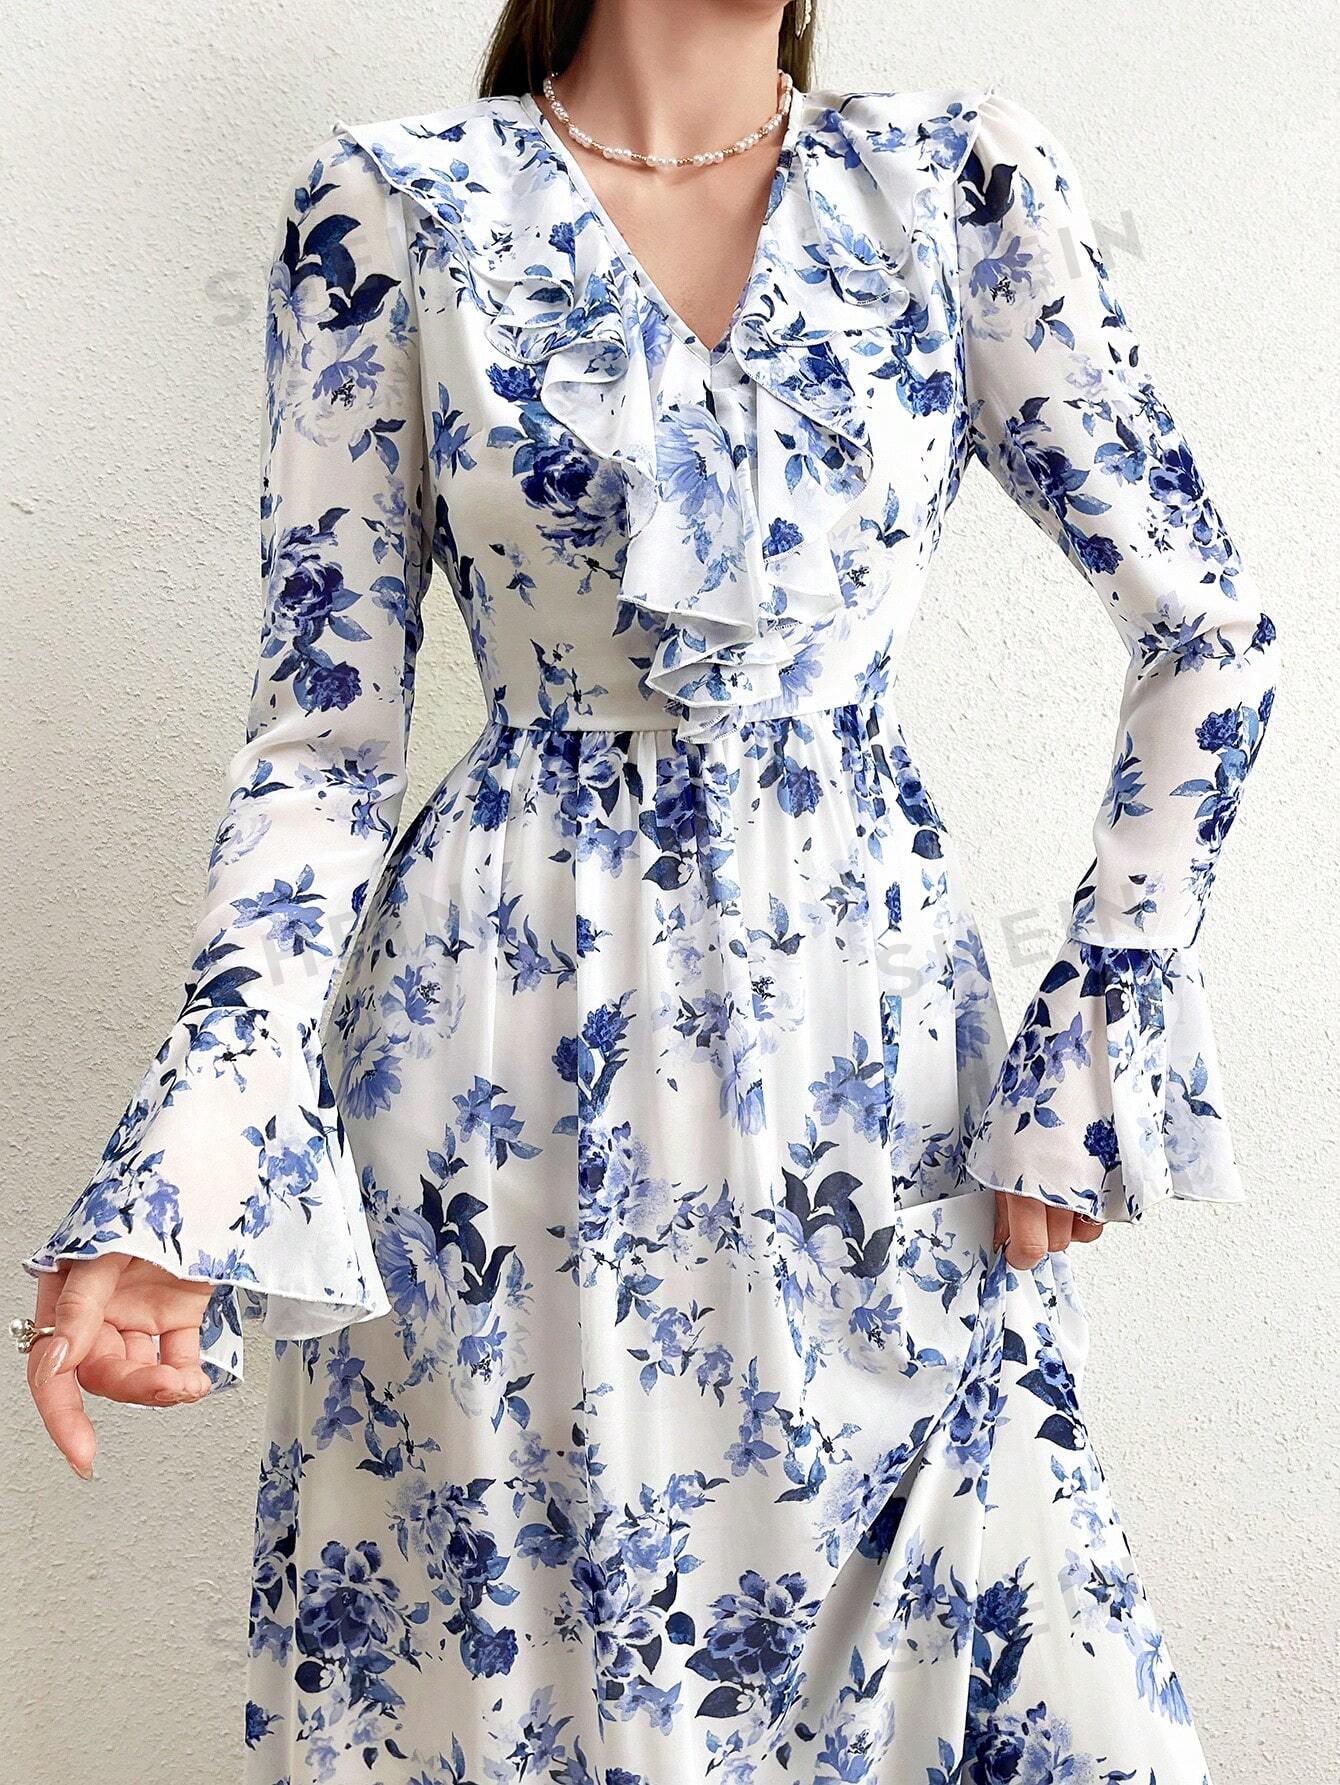 SHEIN Модельное платье с цветочным принтом, рюшами и расклешенными рукавами, синий и белый shein bohofeels женское платье в стиле пэчворк с рюшами и расклешенными рукавами абрикос